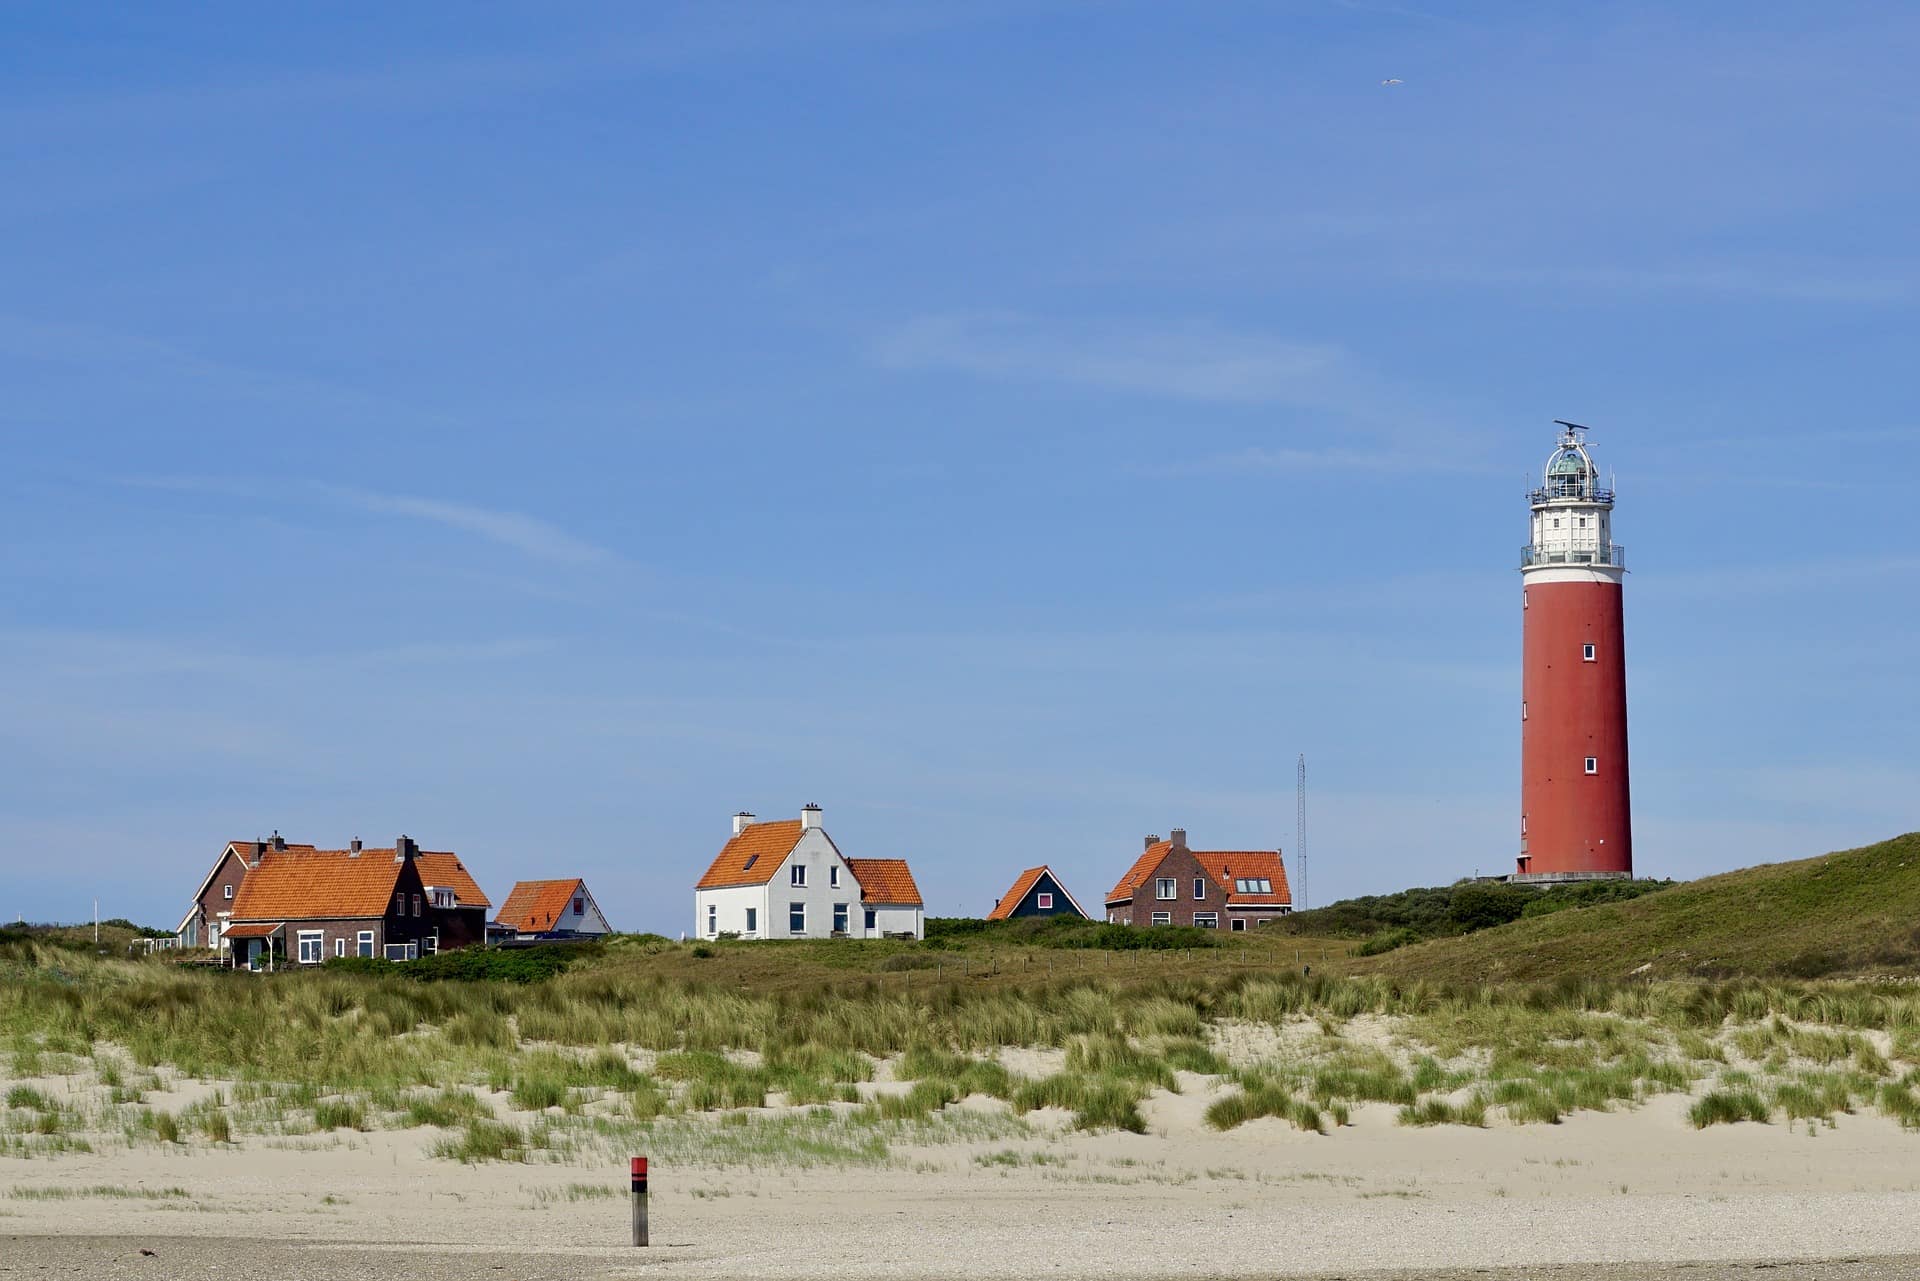 Ihr Ferienhaus in Holland am Meer – die See vor der Haustür